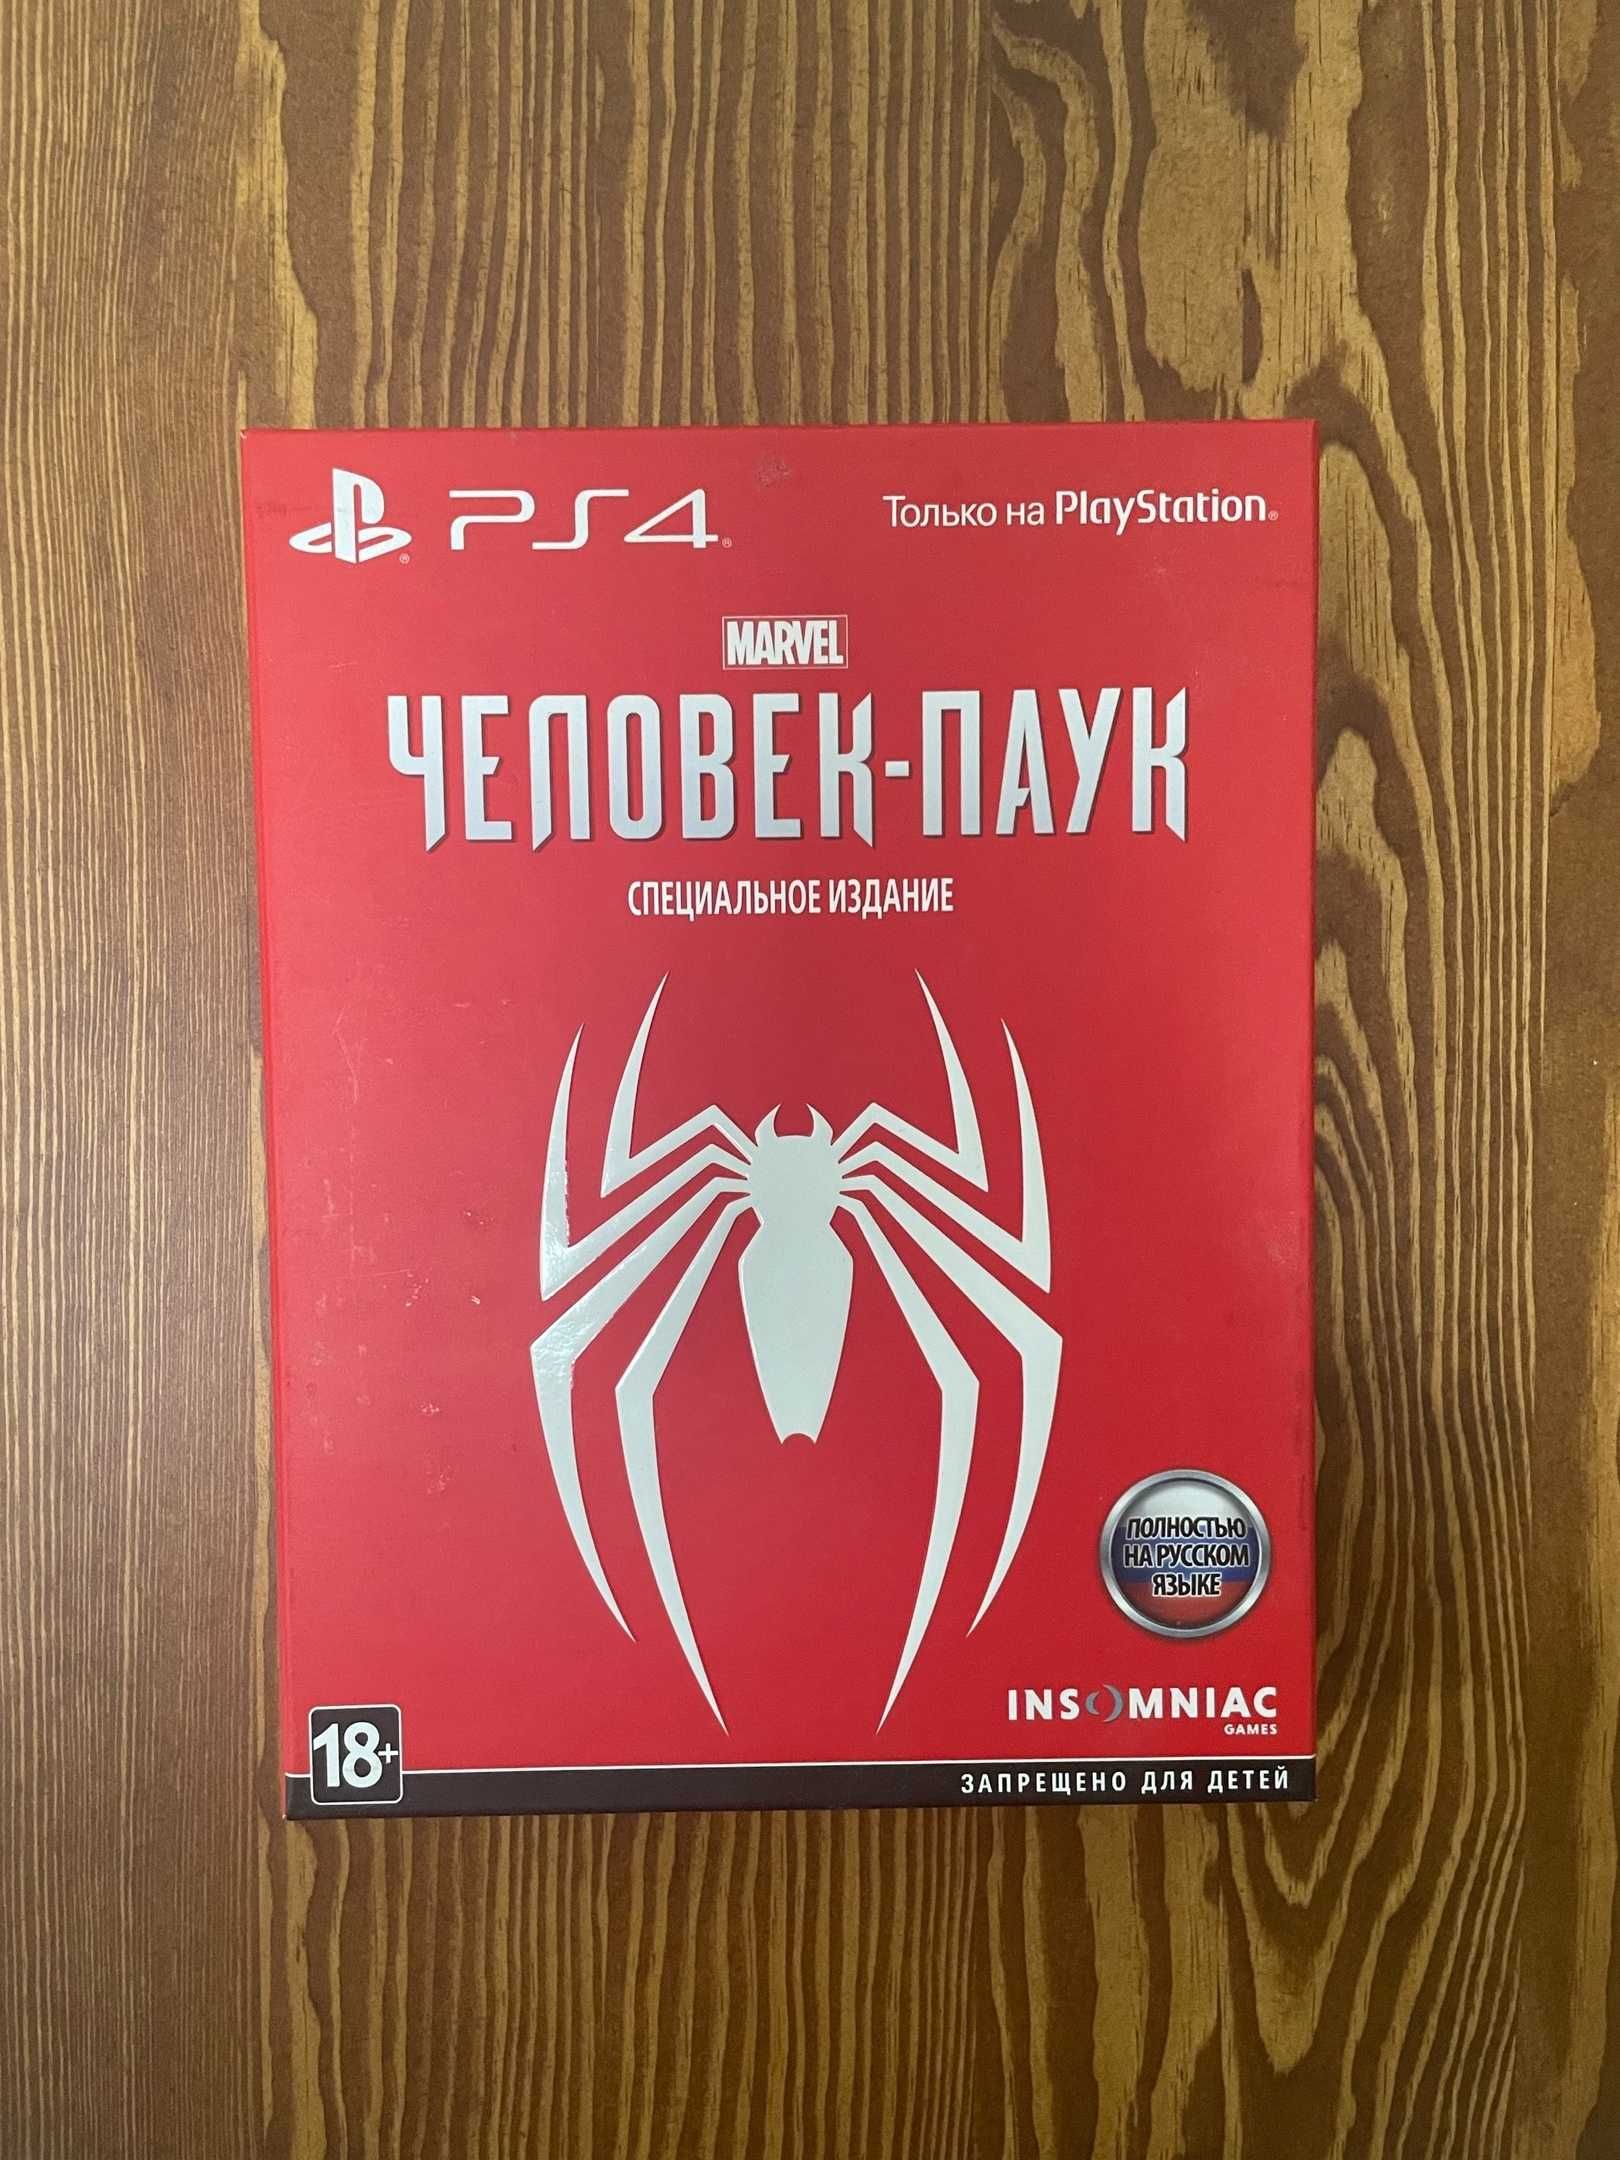 ОБМЕНА НЕТ! Продам игру для PS4 Человек-паук Special Edition